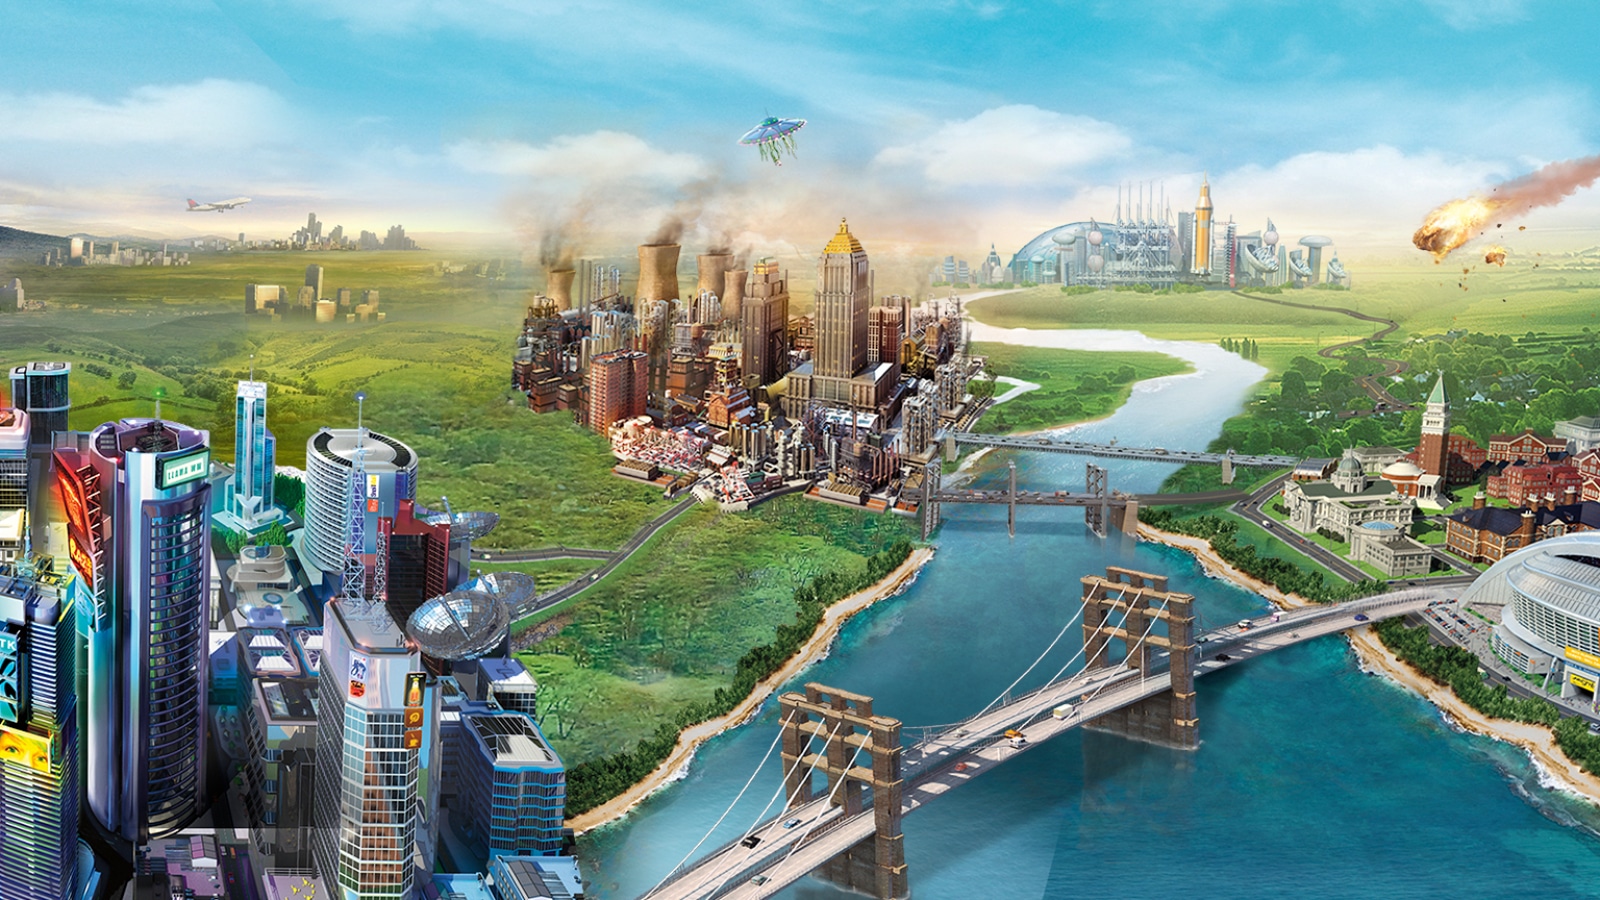 Imagem promocional do "simcity" de 2013, que mostra a arte de uma cidade no design do jogo.